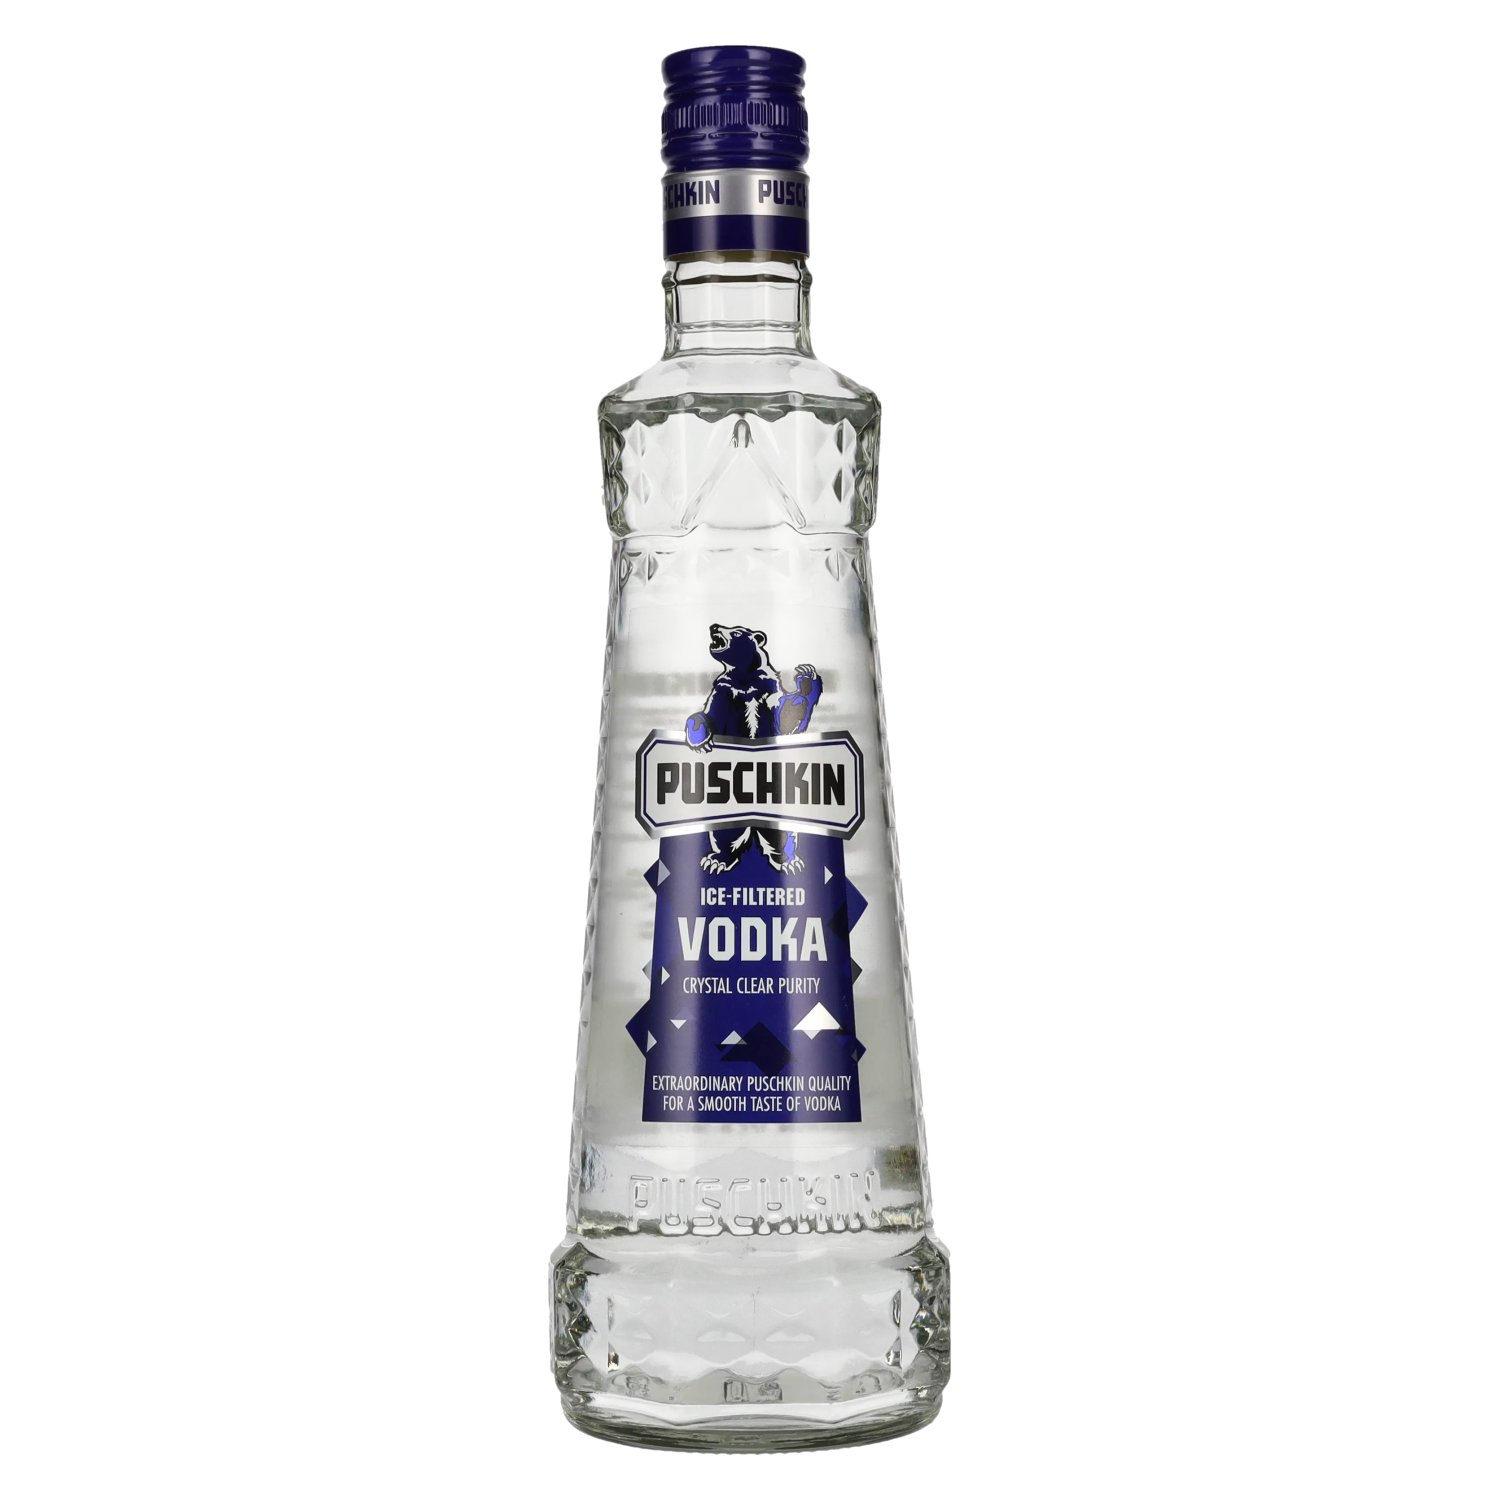 Puschkin Ice-Filtered Vodka Vol. delicando 37,5% 0,7l 